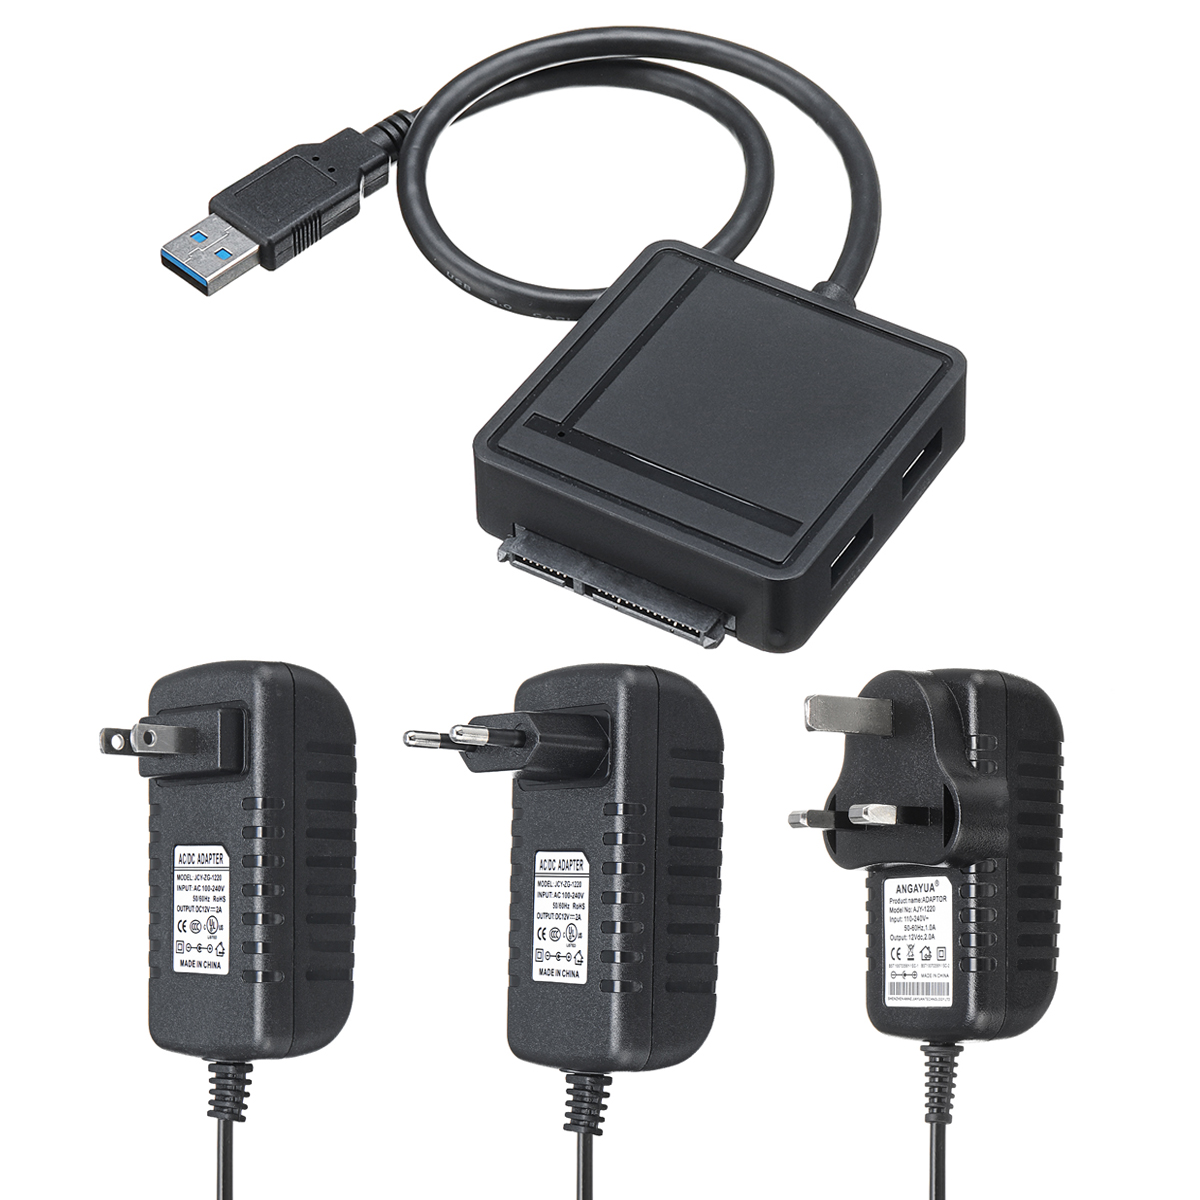 5-In-1 Multifunctional USB 3.0 Docking Station SATA III Adapter with USB Hub Card Reader with USB 3.0 / TF/SD Card Reader / SATA III